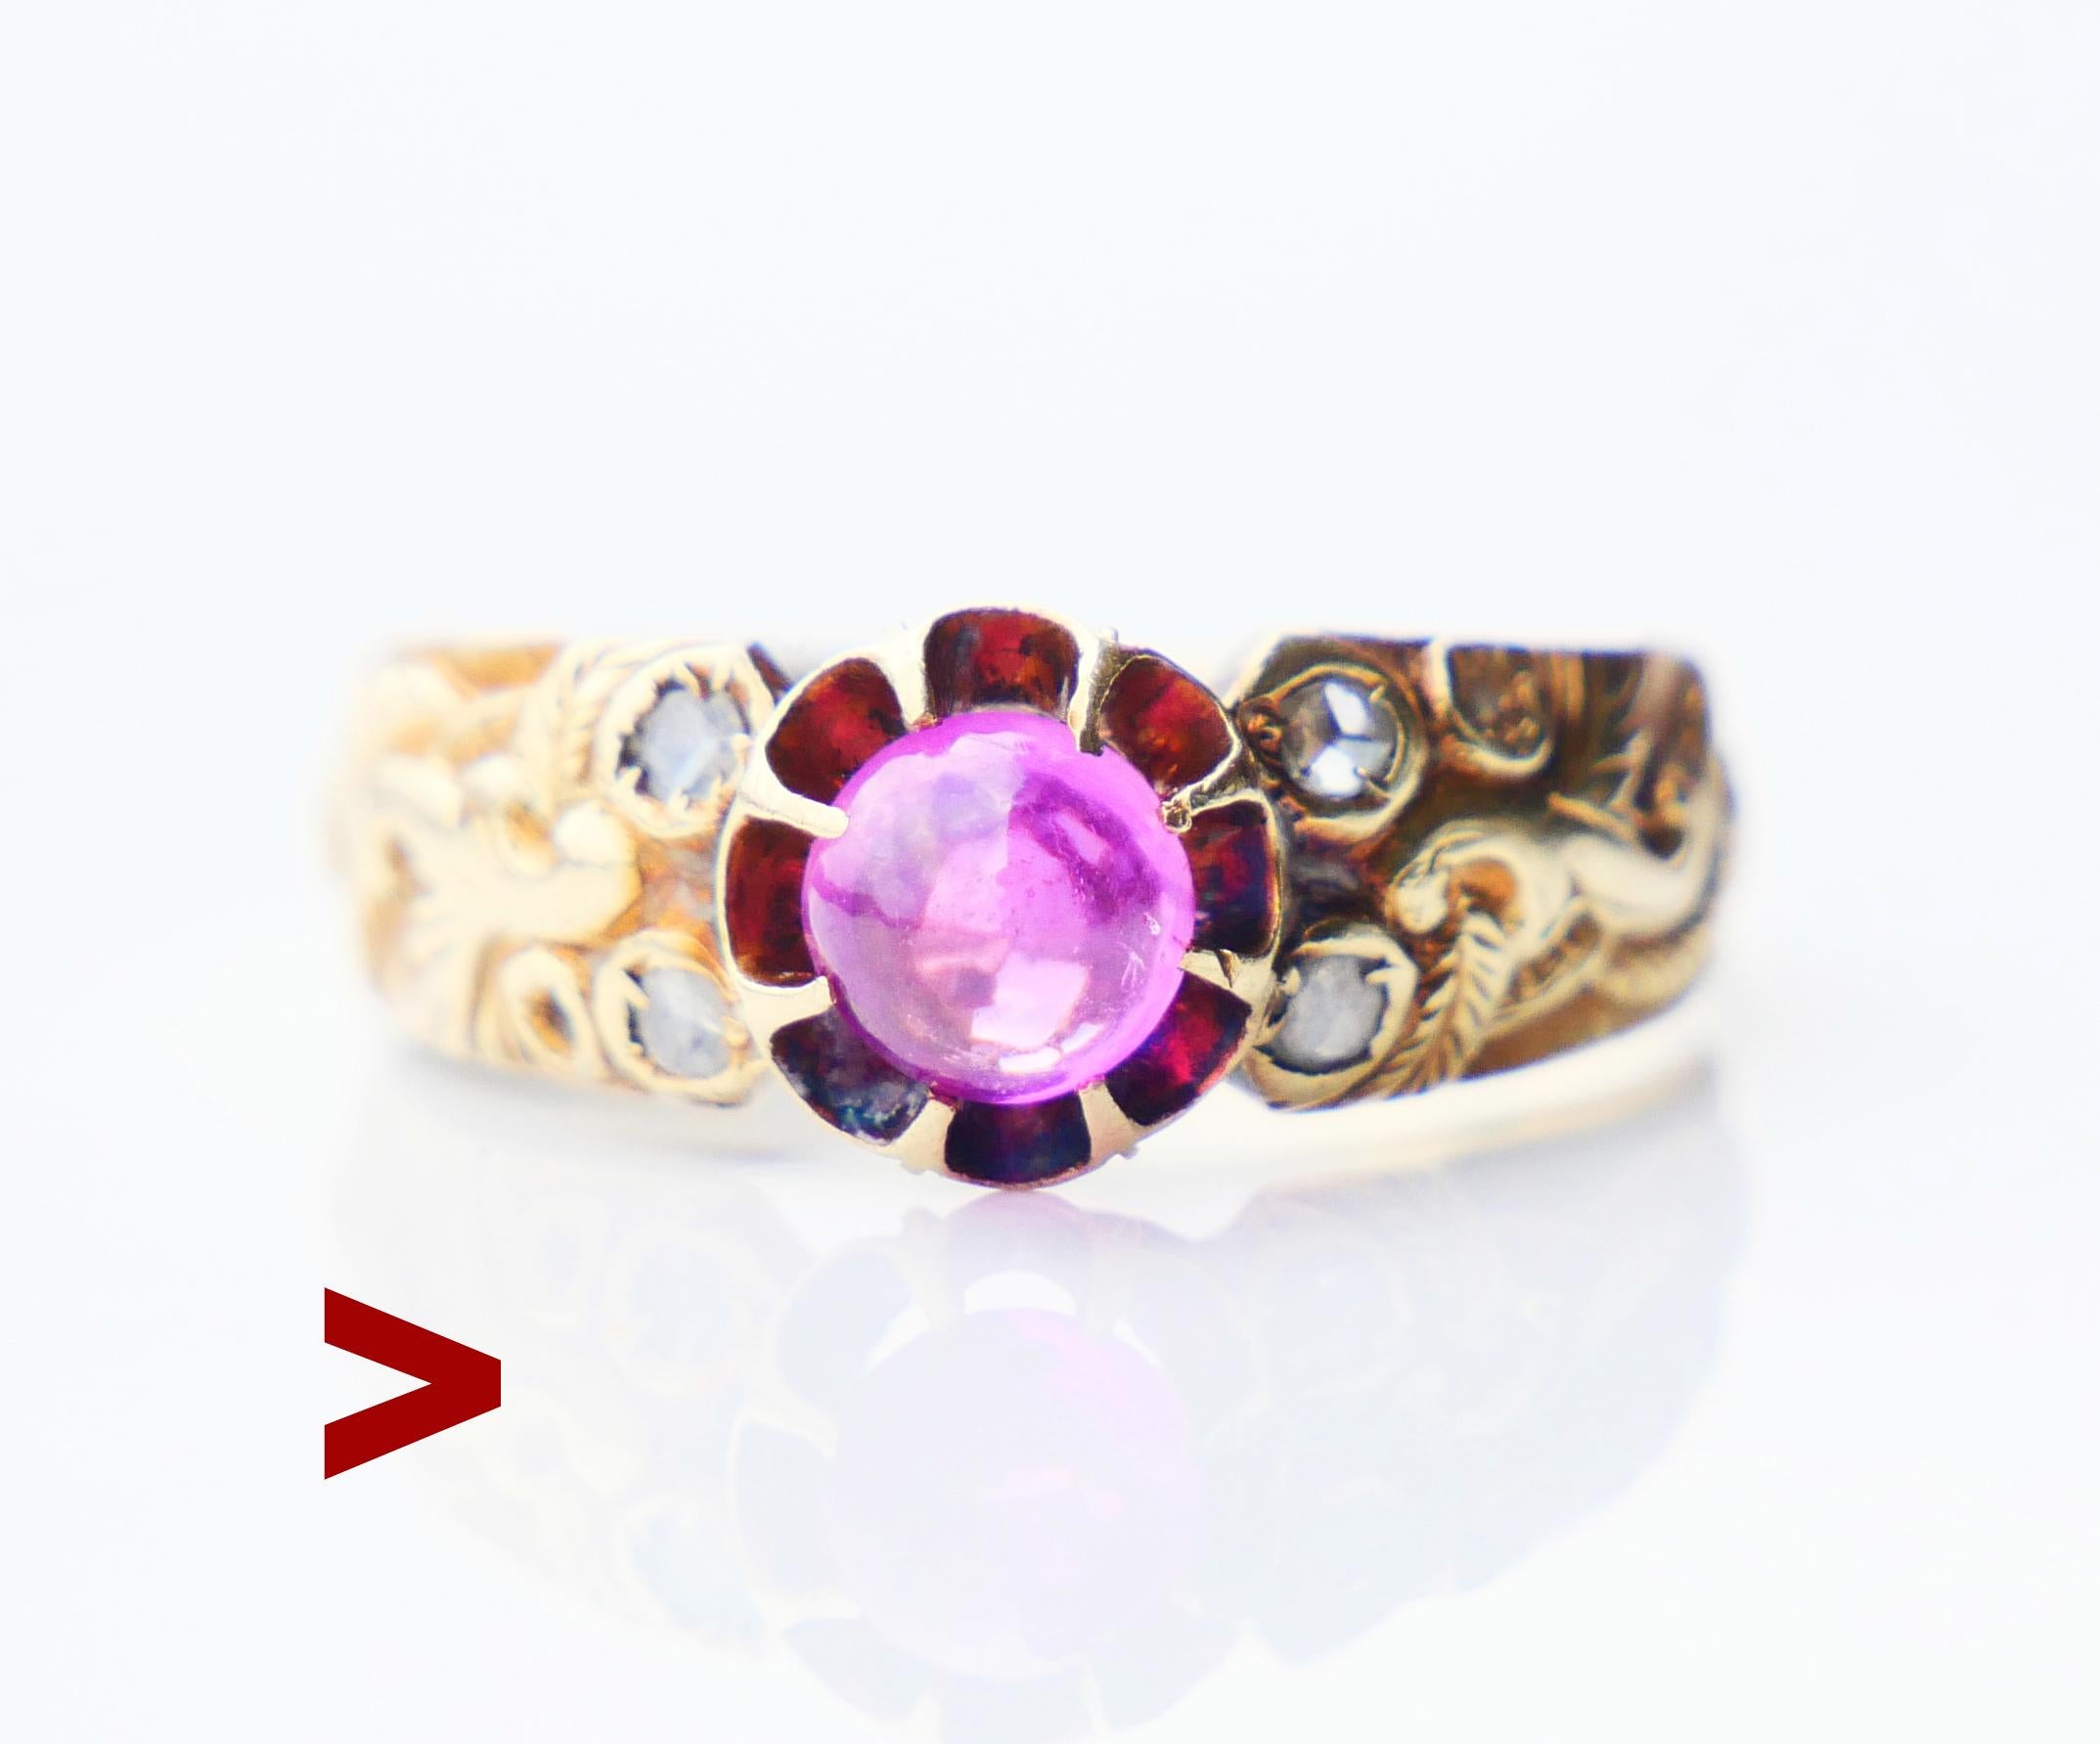 Alter estnischer Ring mit natürlichem Rubin und Diamanten, hergestellt zwischen 1919 und 1924.

Dieser Ring zeigt die Traditionen und Techniken der russischen Juwelierschule, die kurz nach dem Zusammenbruch des Russischen Reiches, als Estland ein